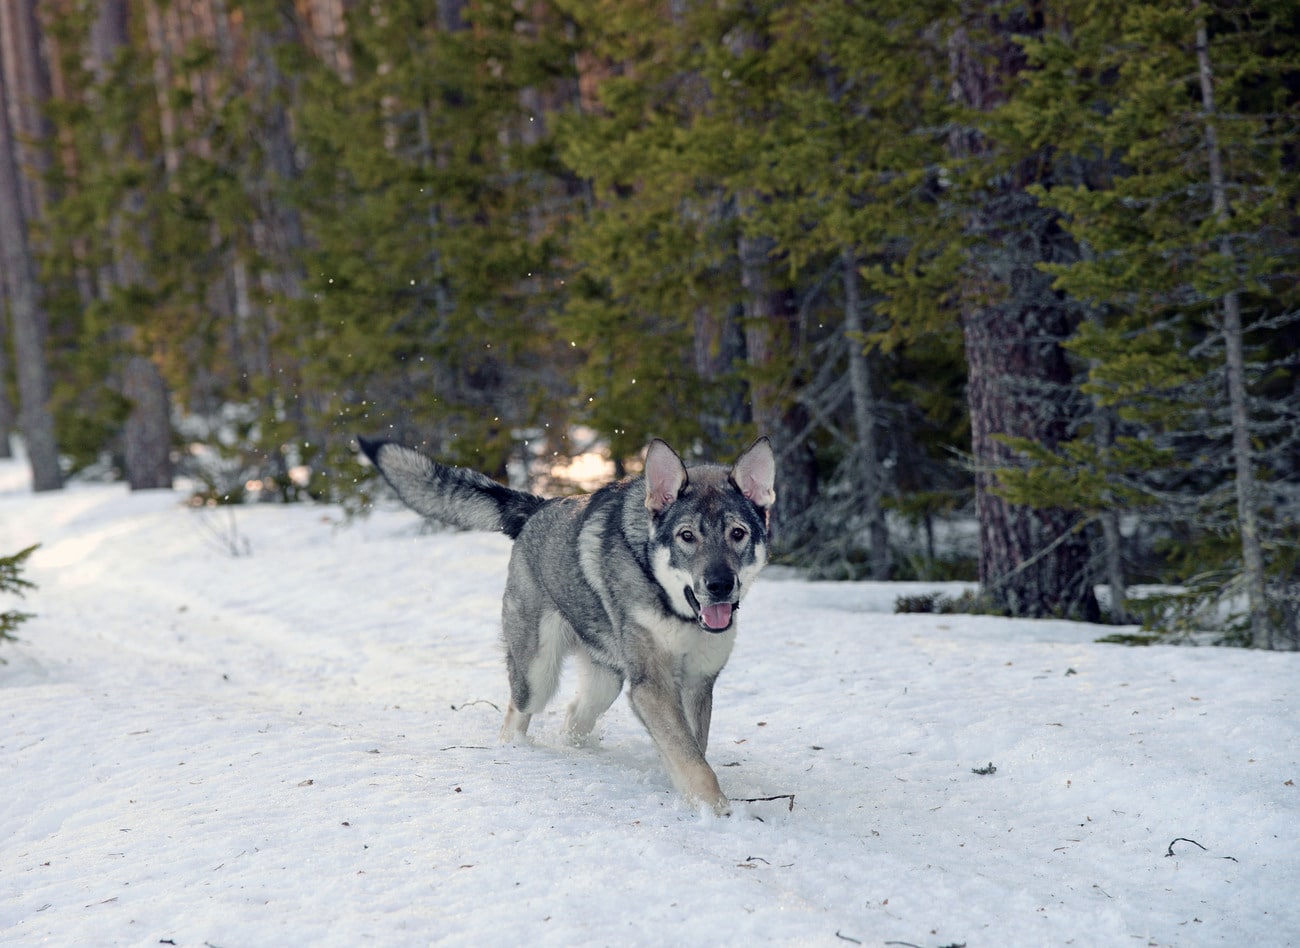 Att jaga med löshund i februari är inte förenligt med god jaktetik, skriver debattören. Foto: Lars-Henrik Andersson